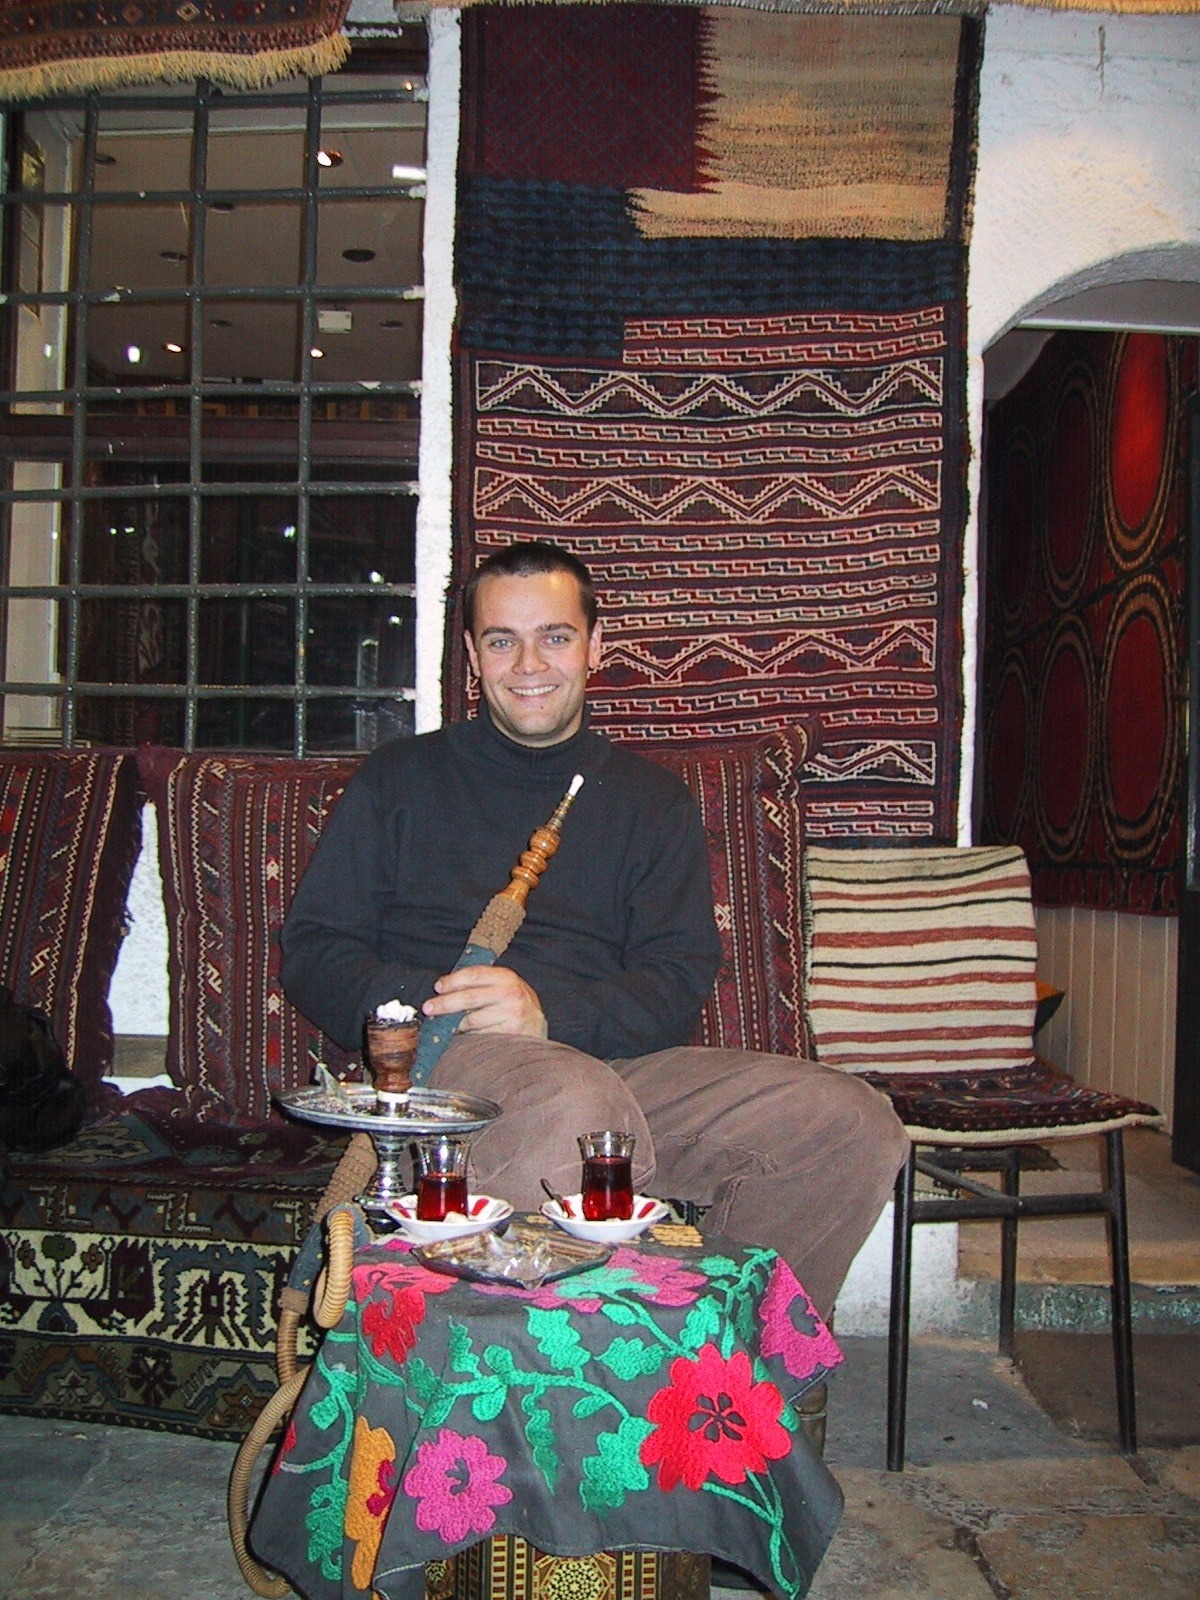 The author in the Ilesam Lokali tea garden, Istanbul